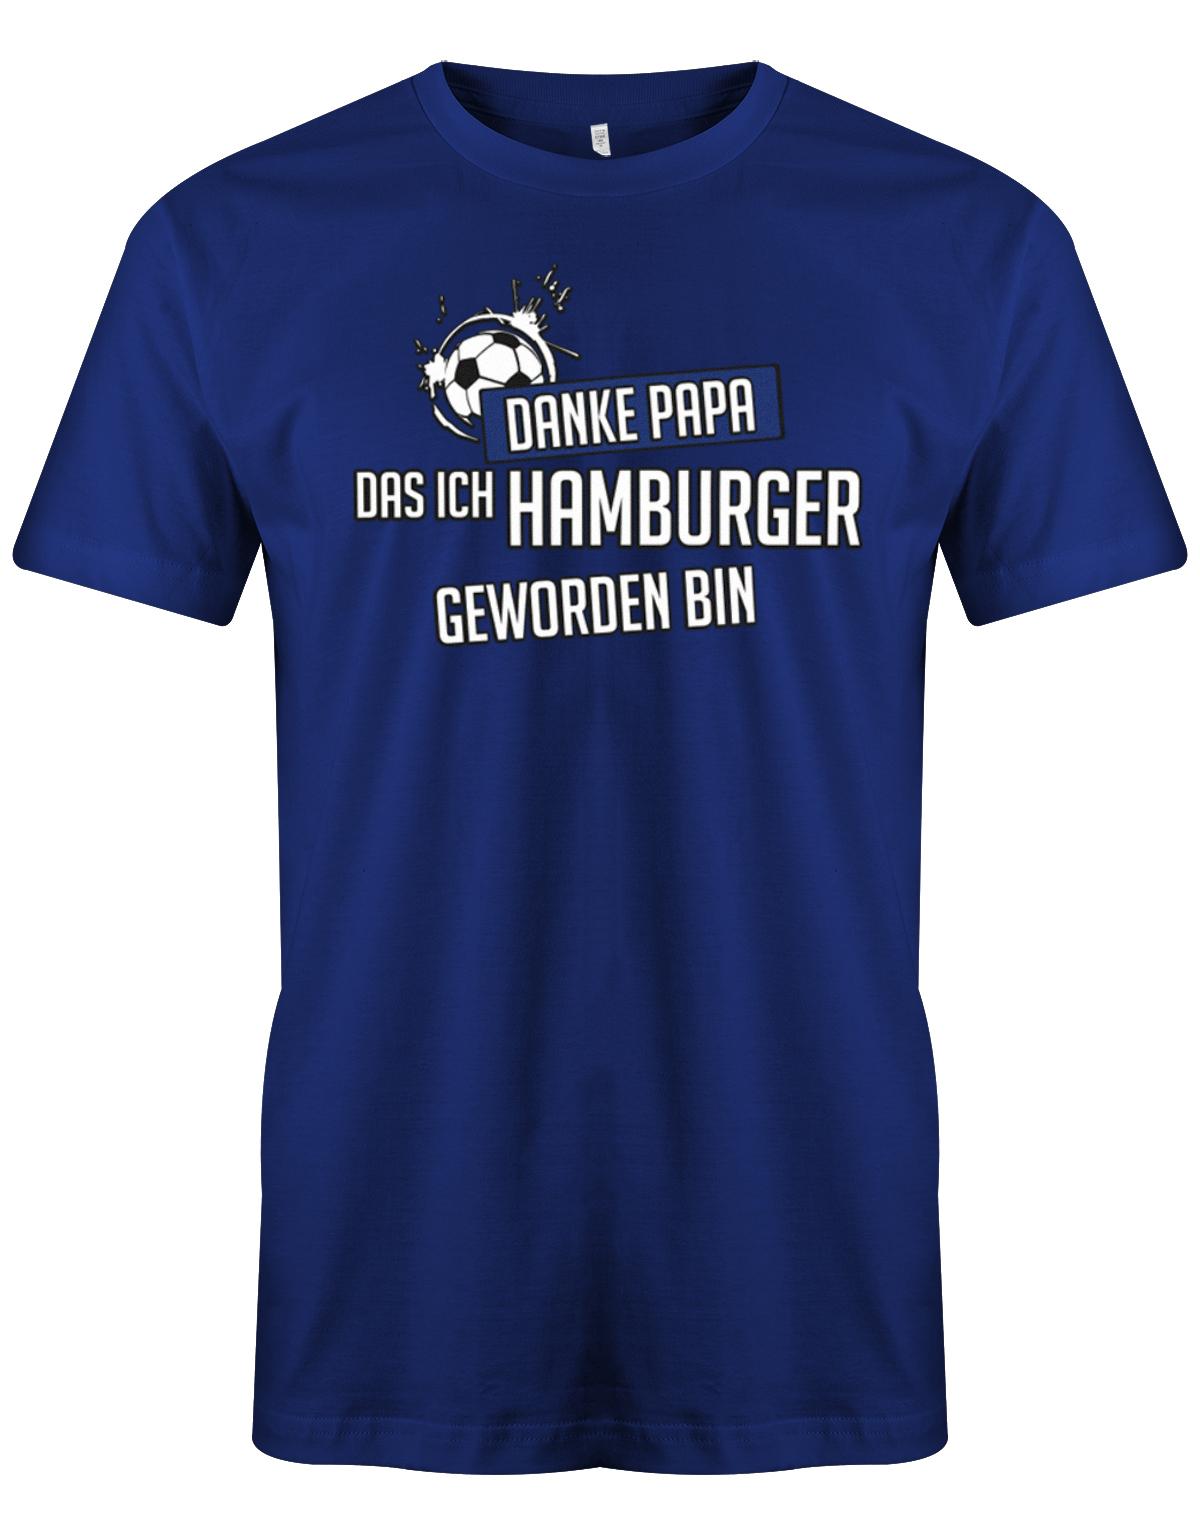 Danke-papa-das-ich-Hamburger-geworden-Hamburg-shirt-herren-Royalblau